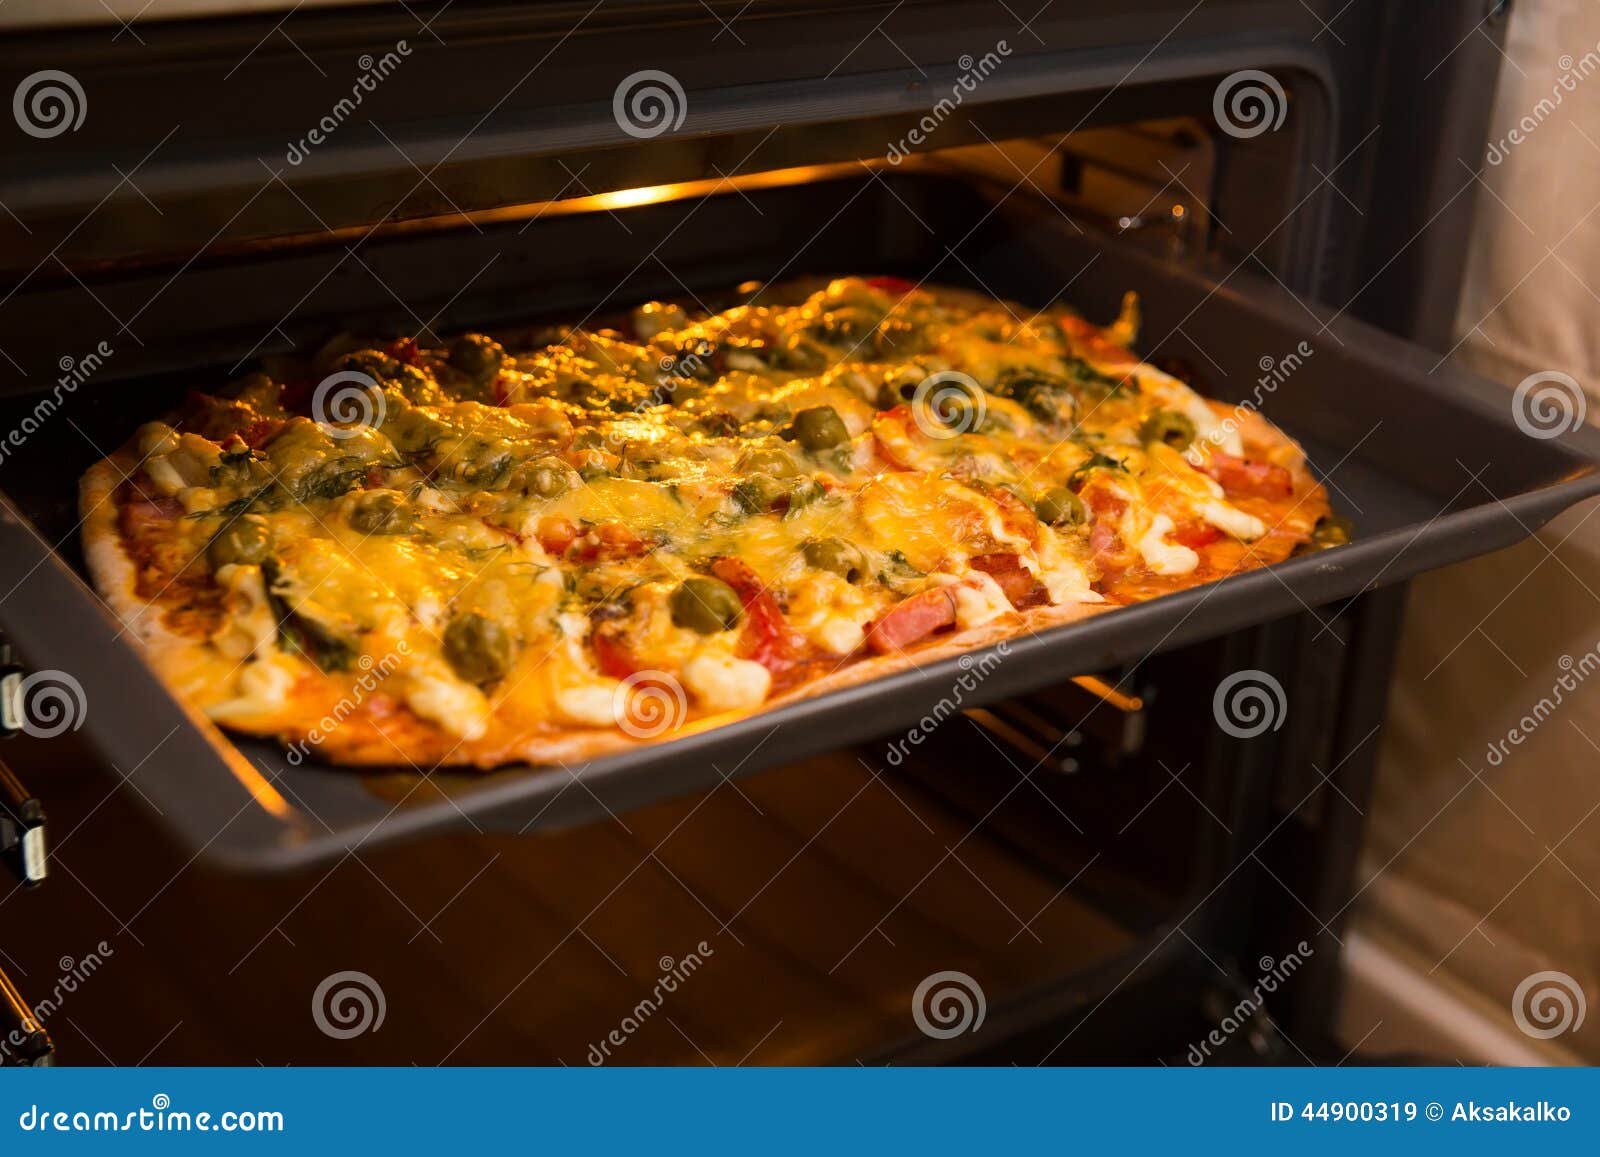 что делать если пицца пересохла в духовке фото 73